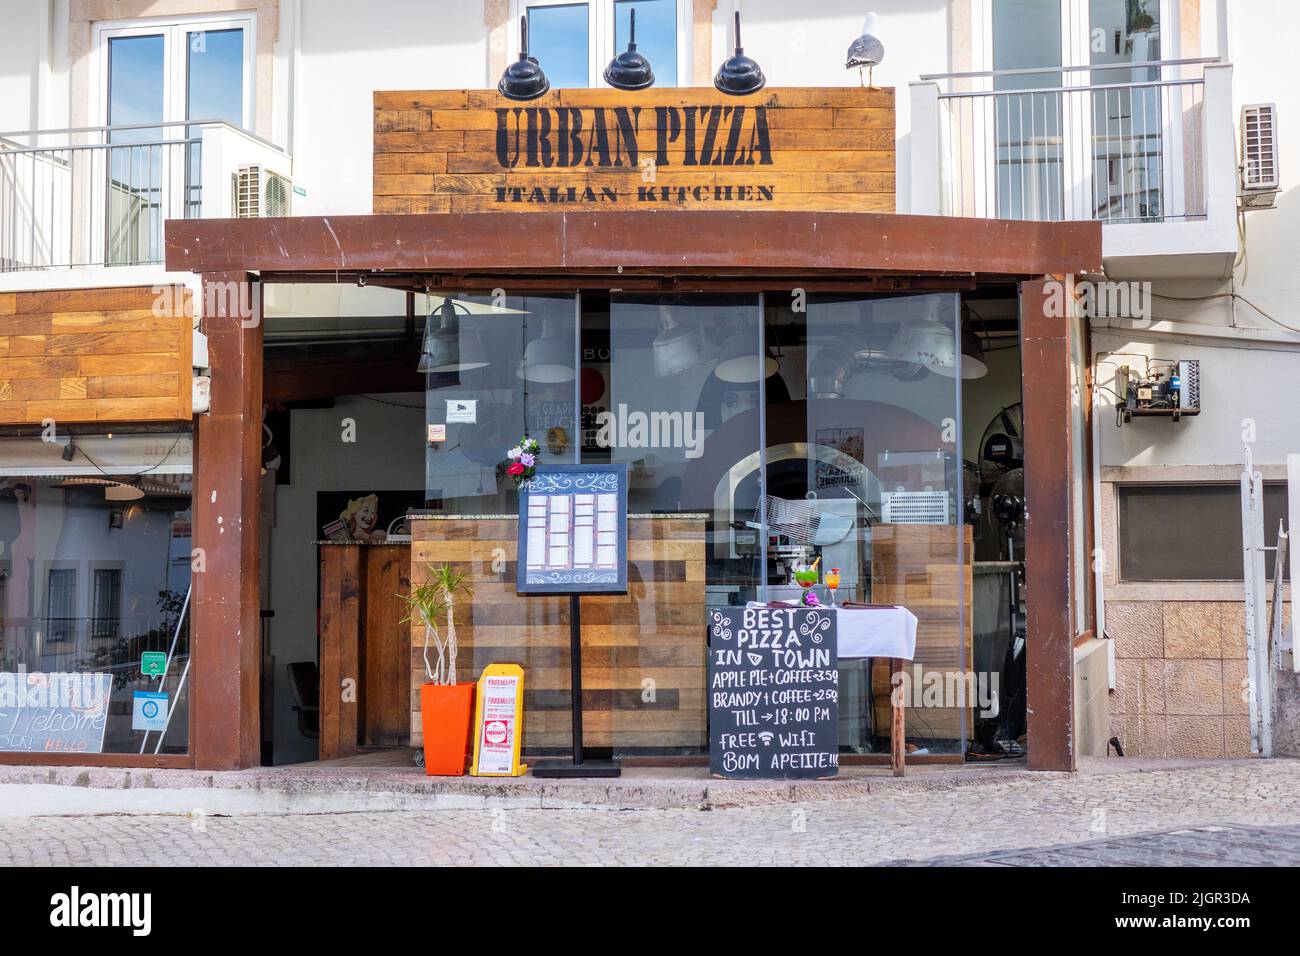 Urban Pizza Restaurant dans la vieille ville d'Albufeira Publicité sur Un tableau de craie affiche meilleure pizza dans la ville à l'extérieur du menu du restaurant affiche a des prix de popu Banque D'Images